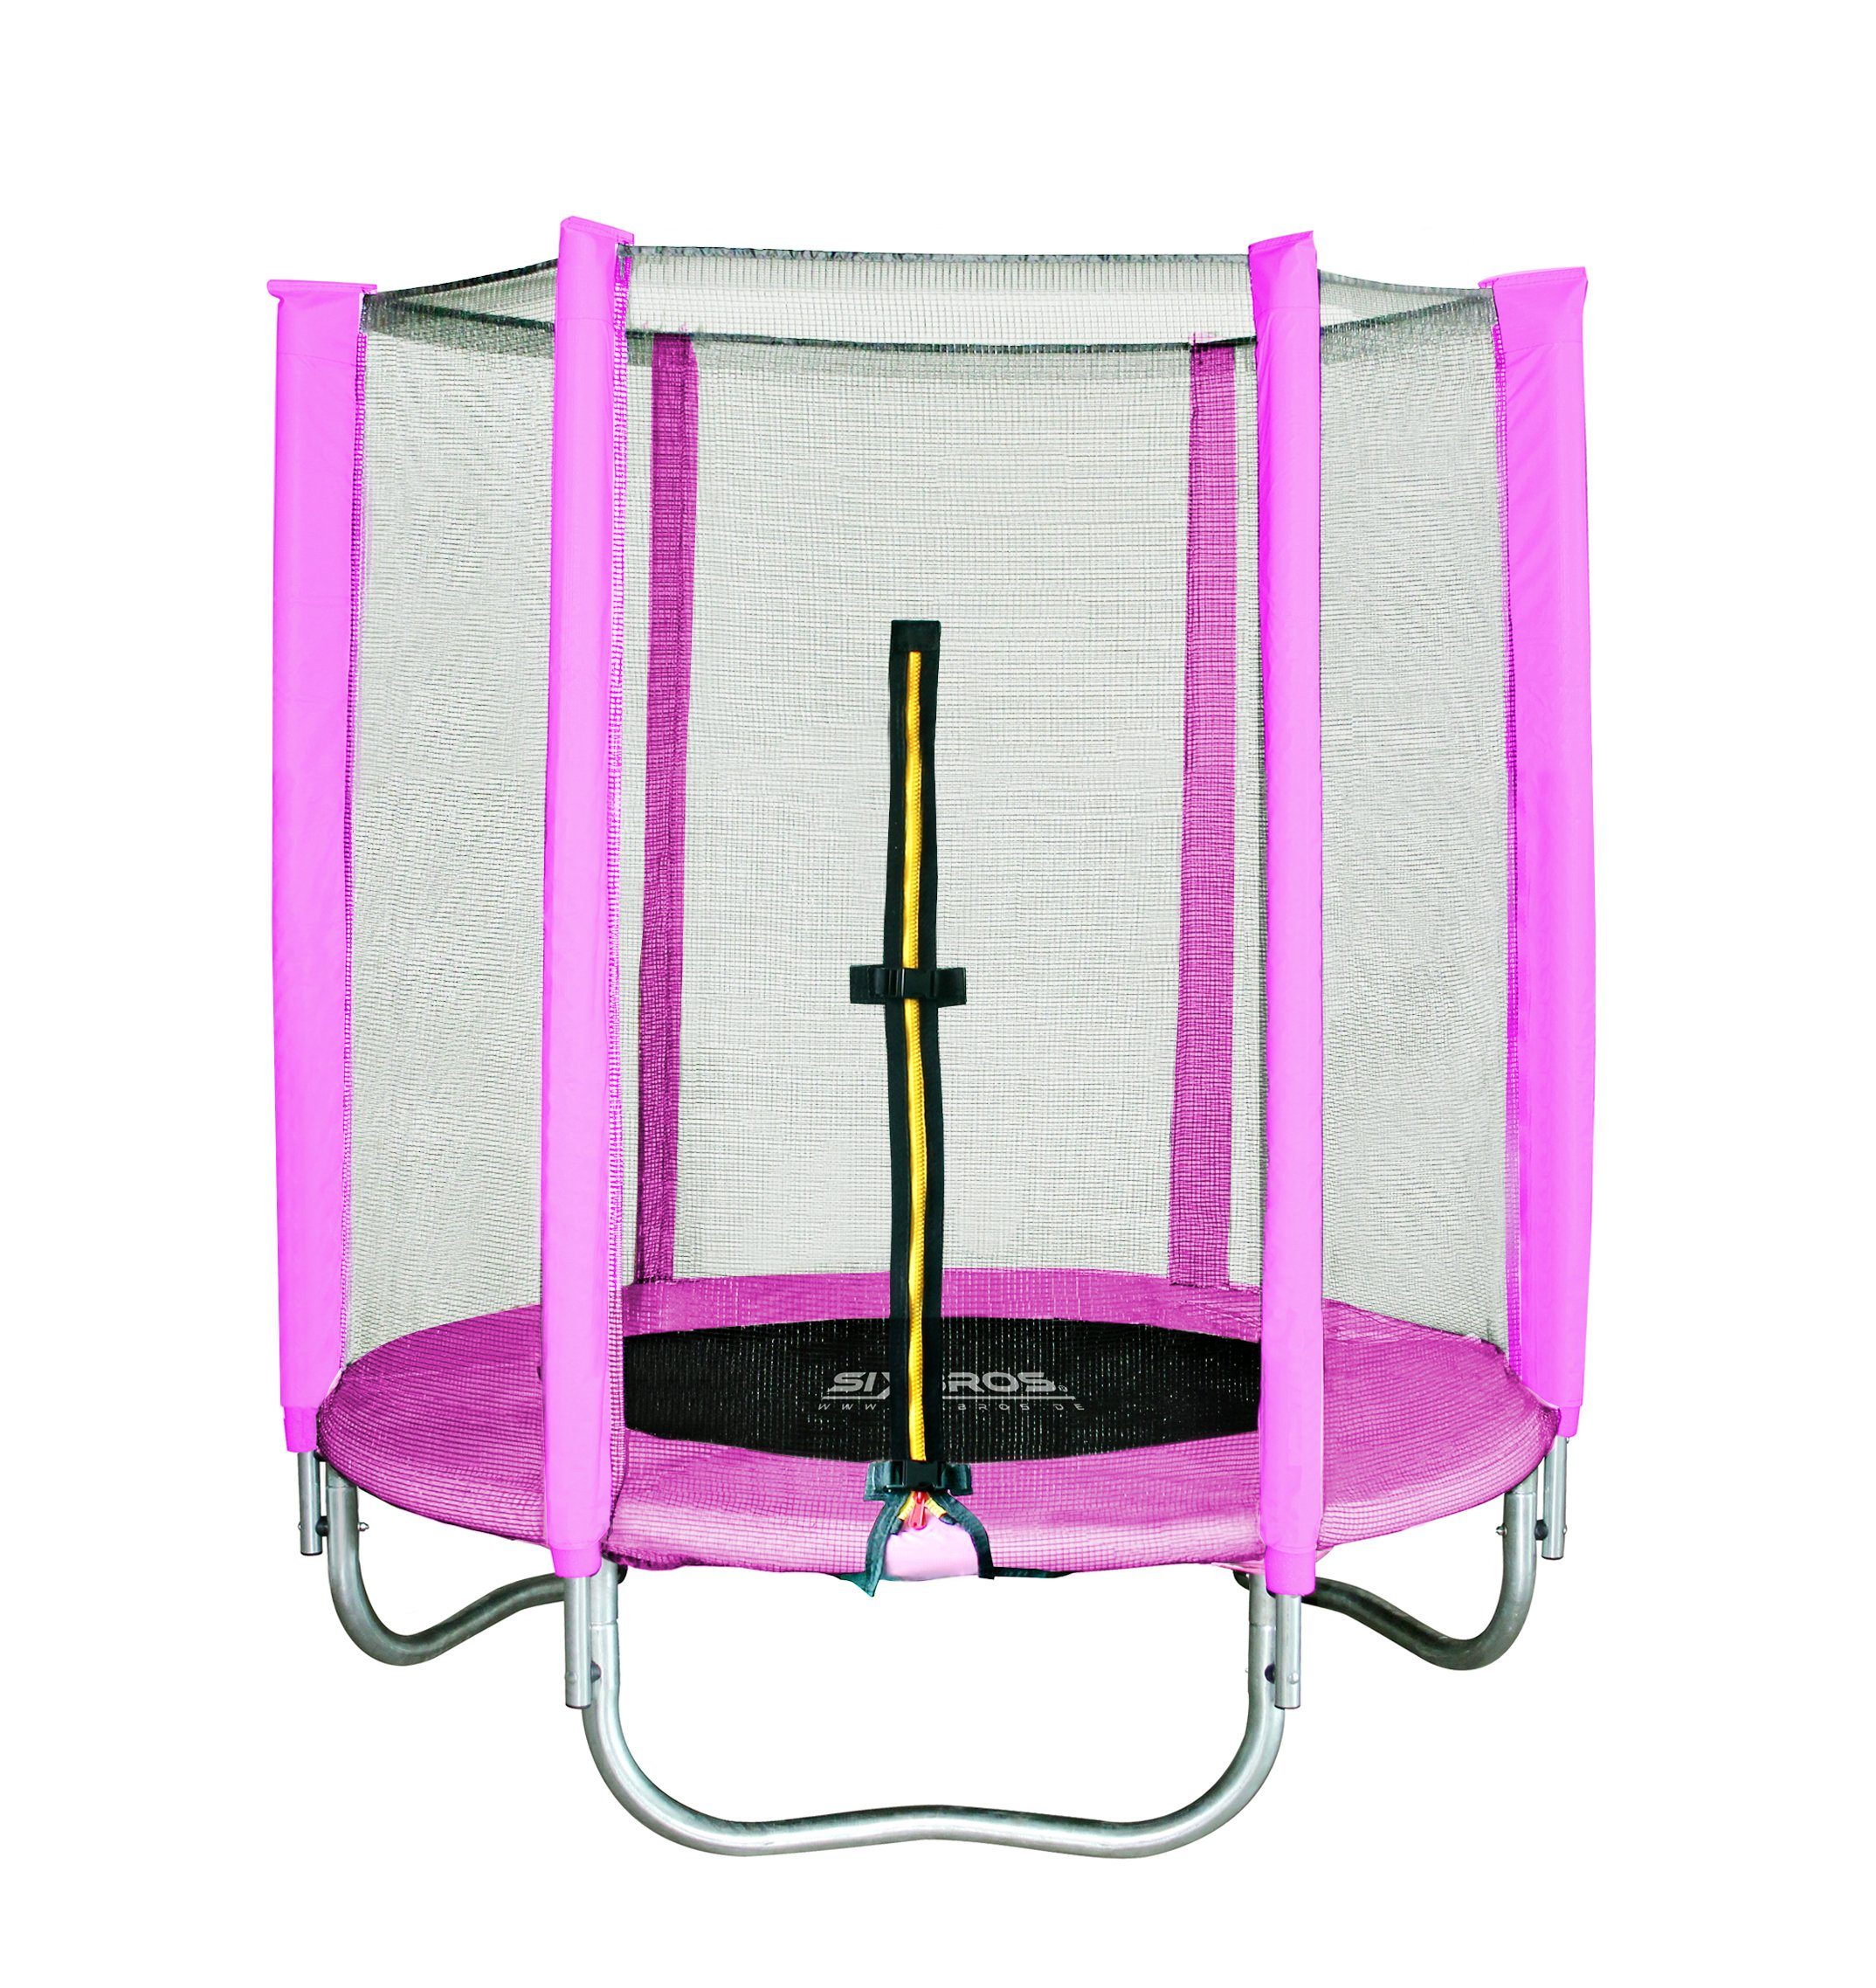 SixBros. Gartentrampolin »TP140/1534«, Ø 140.0 cm, Trampolin mit  Sicherheitsnetz Pink online kaufen | OTTO